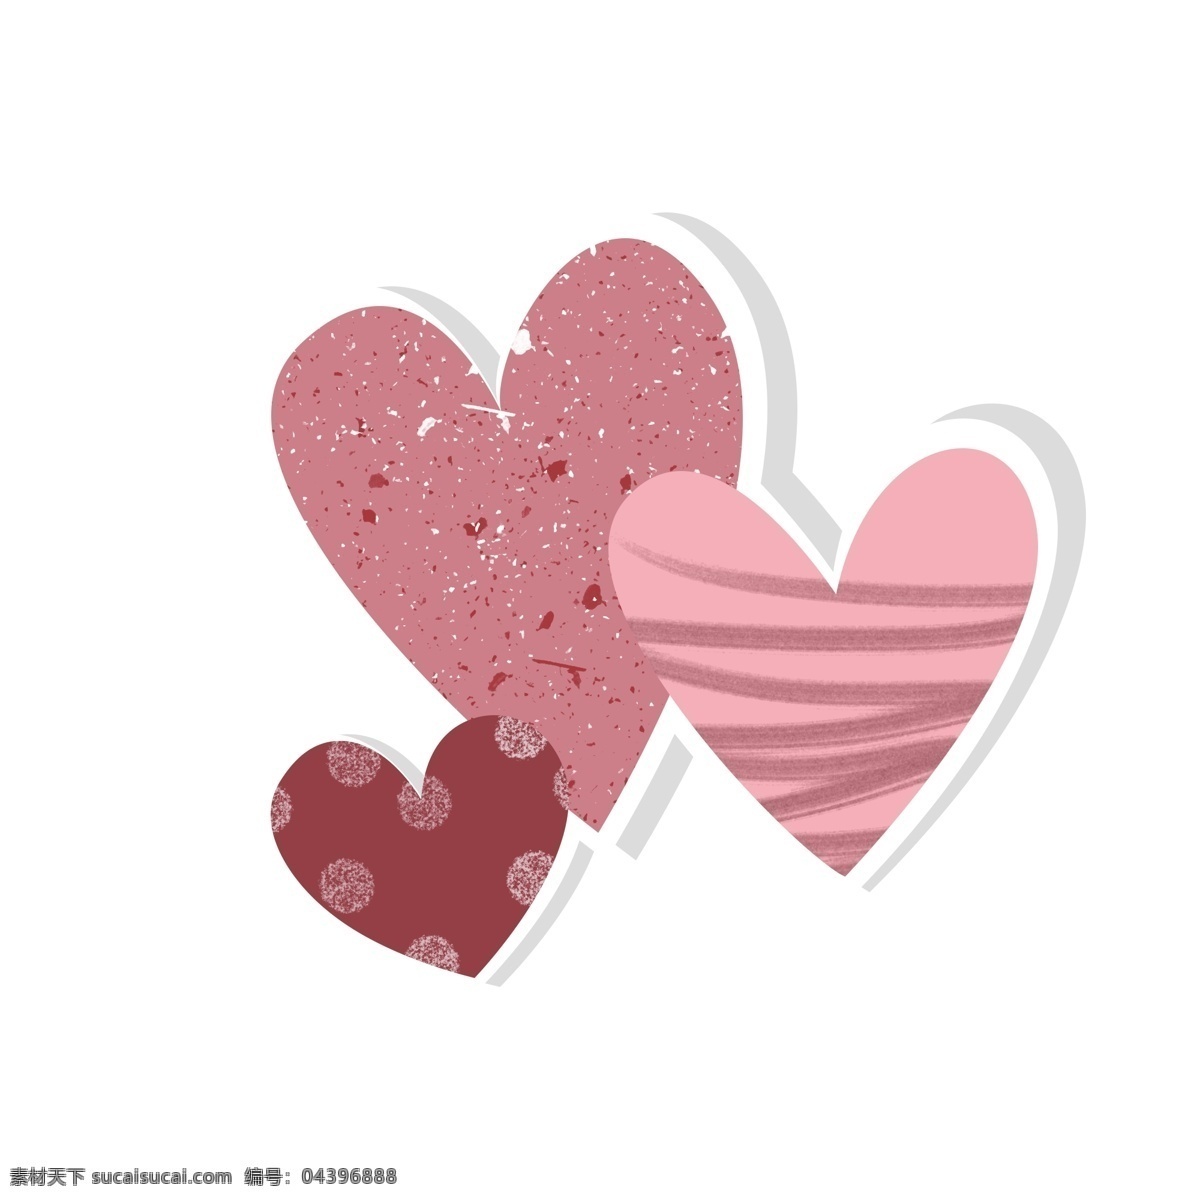 粉色 红色 卡通 可爱 爱心 组合 粉色爱心 红色爱心 可爱卡通爱心 爱心组合 组合贴纸爱心 免 扣